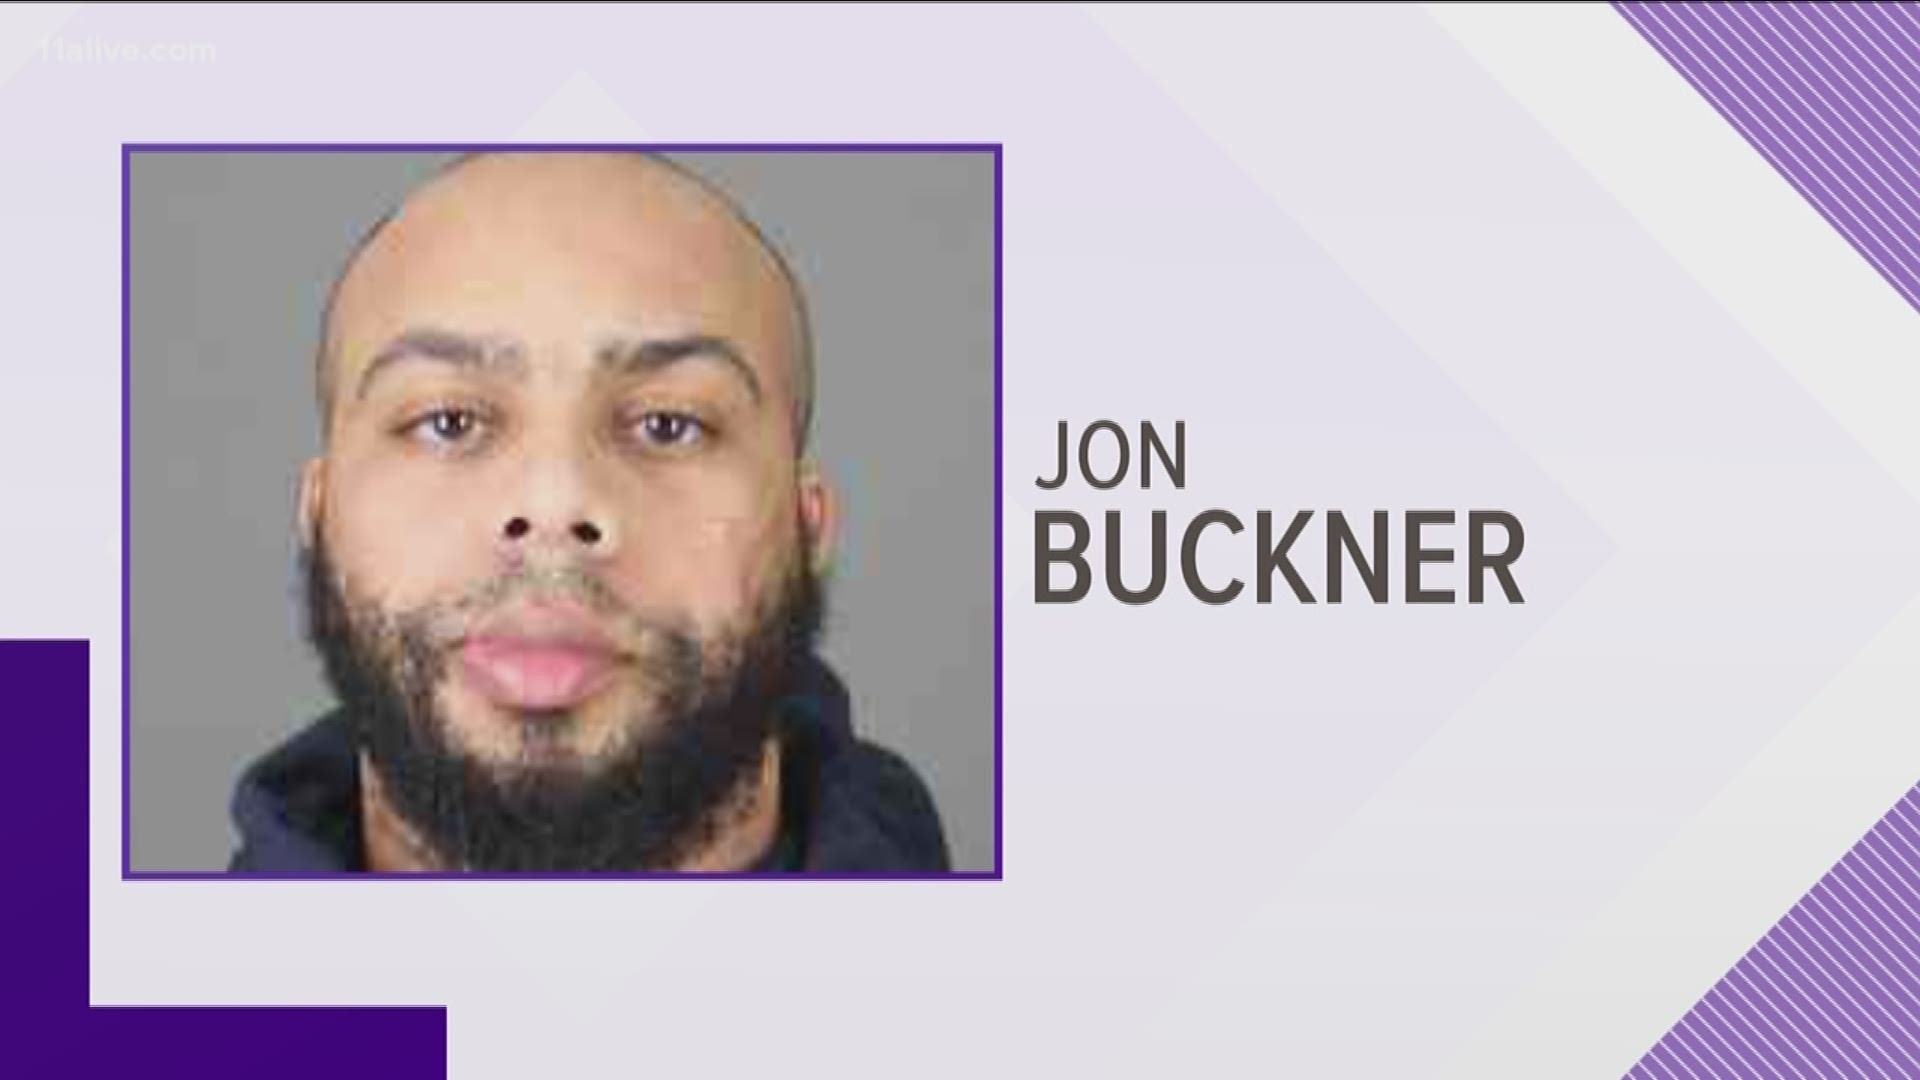 Jon Buckner, from Riverdale, was arrested.